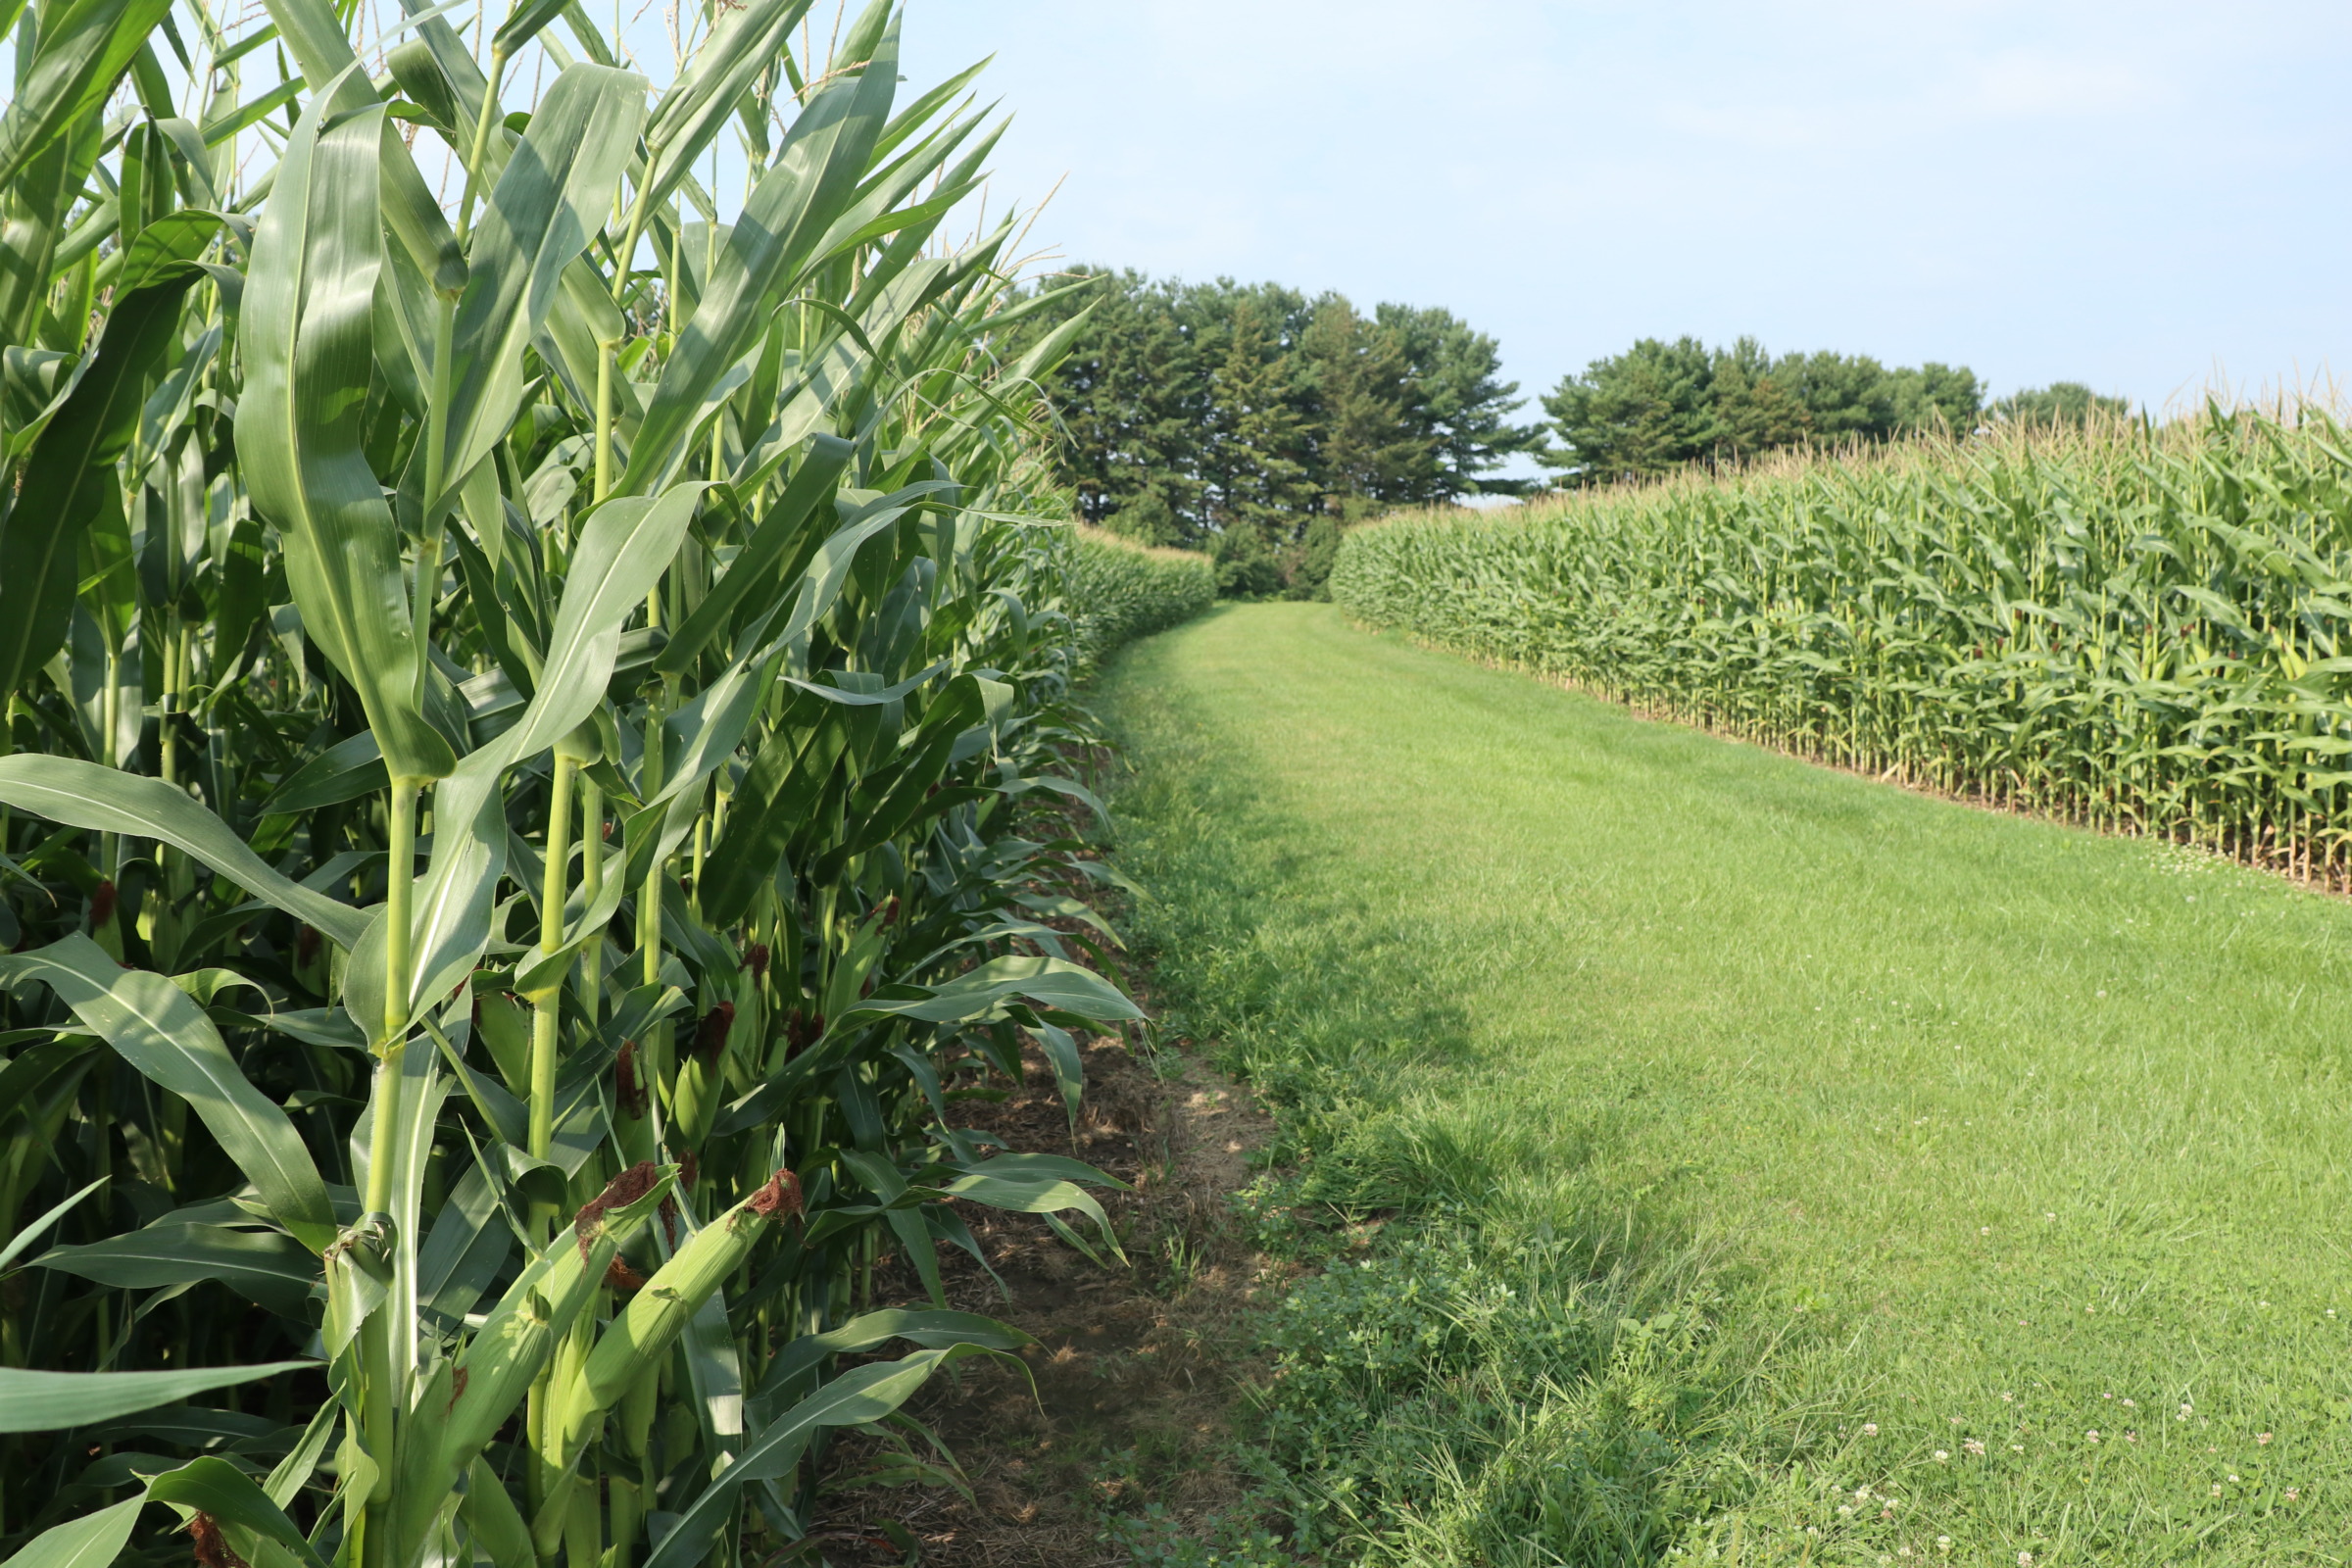 a path through a green field of corn